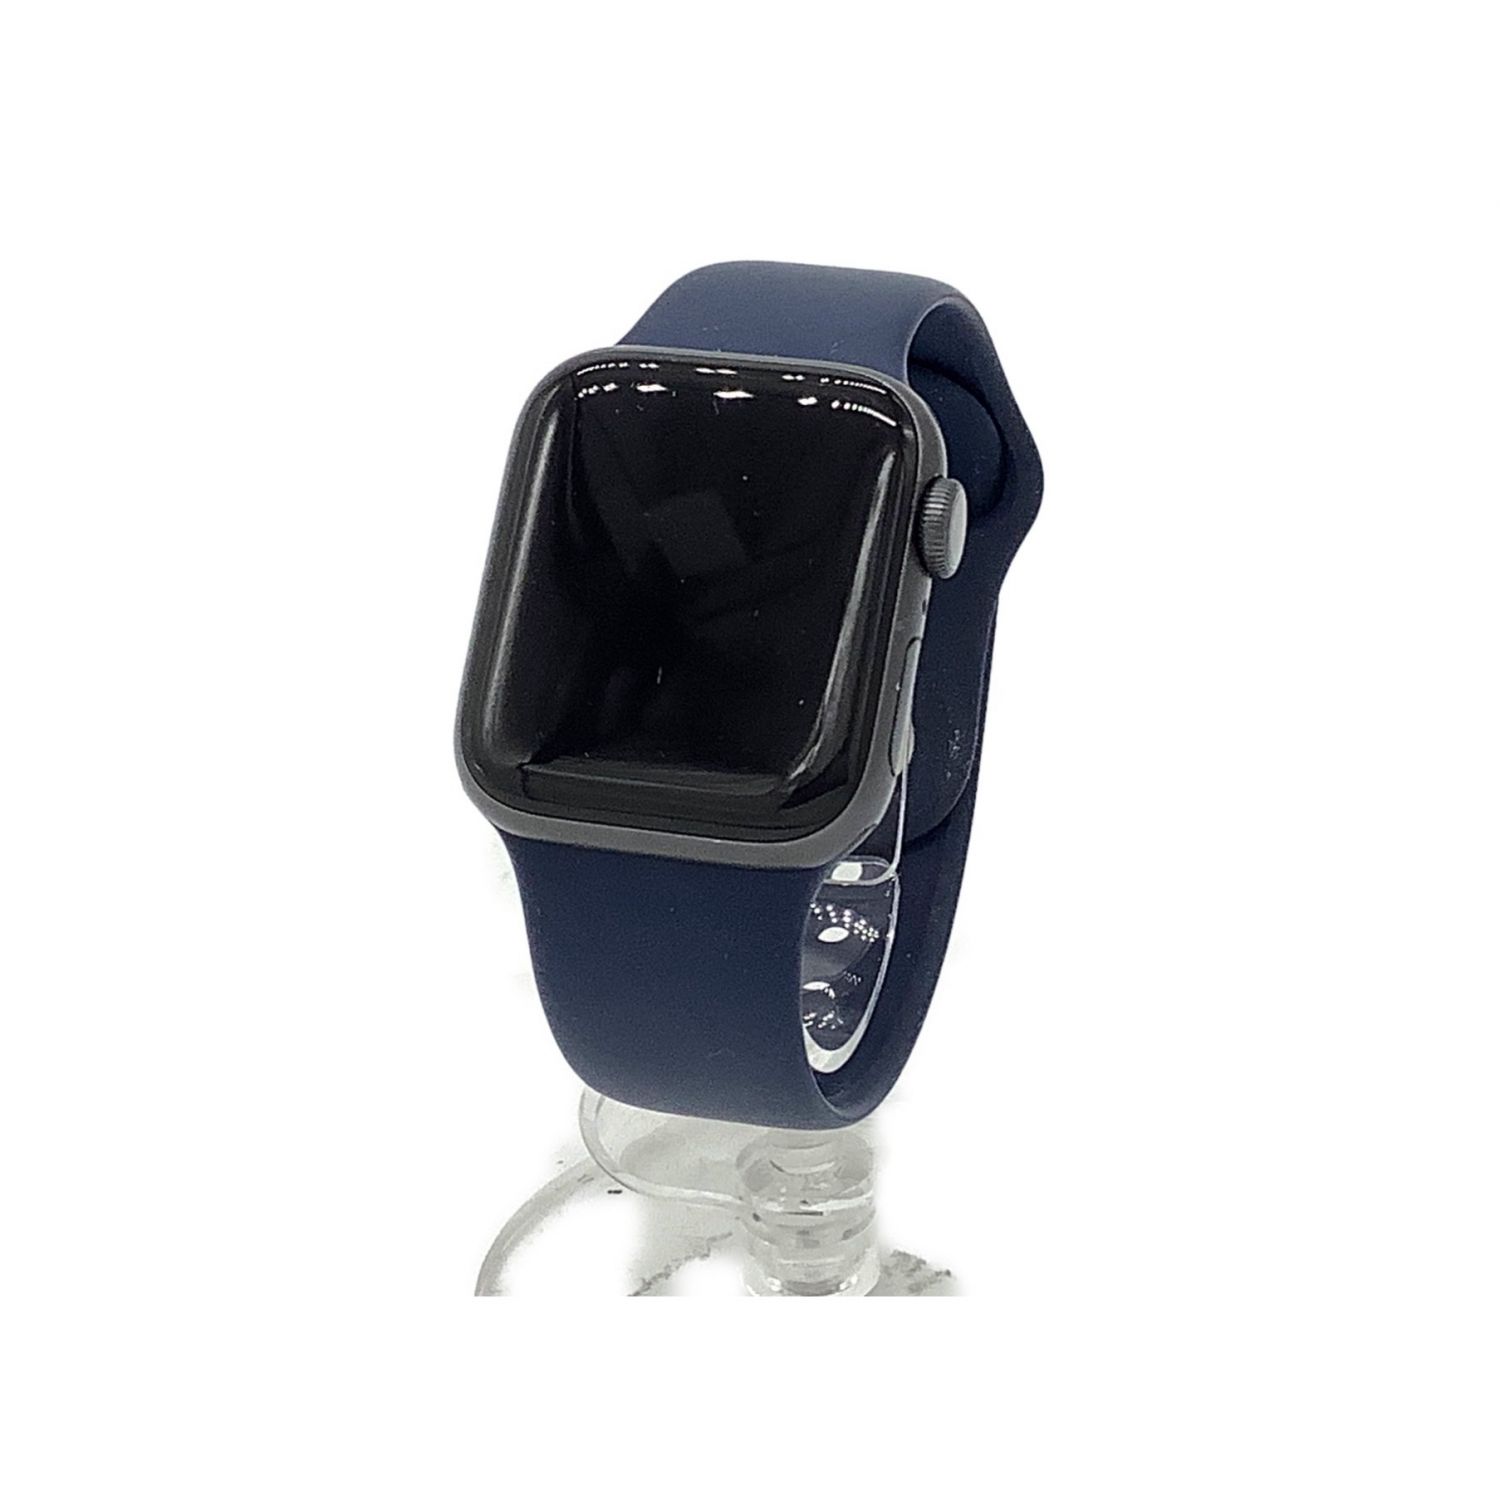 特別セーフ MWT02J/A GPS 40mm series5 watch Apple その他